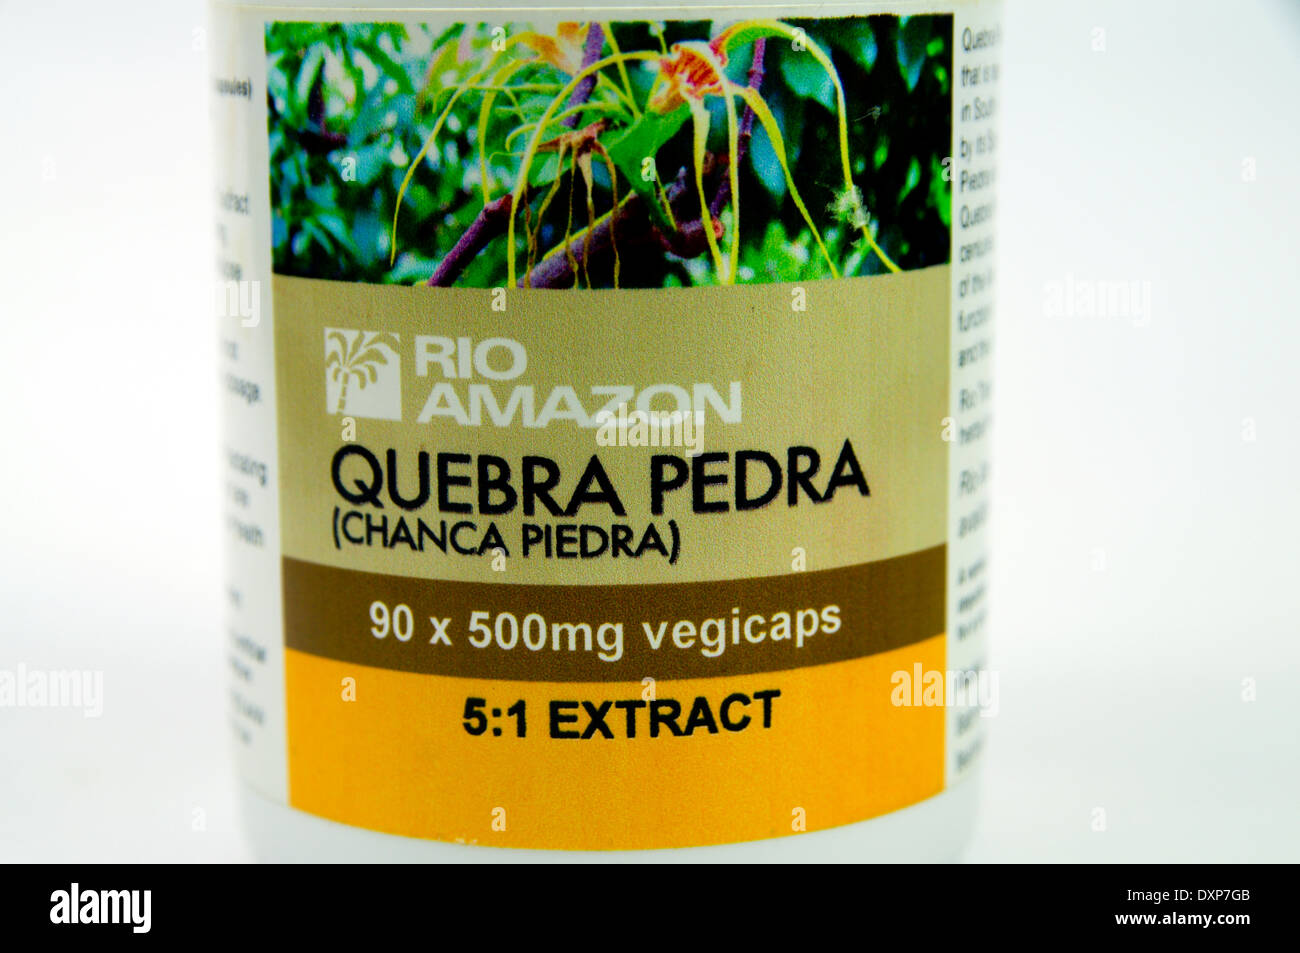 Quebra Pedra remedio de hierbas del Amazonas utilizado para tratar los cálculos renales y problemas de la vesícula biliar. Foto de stock